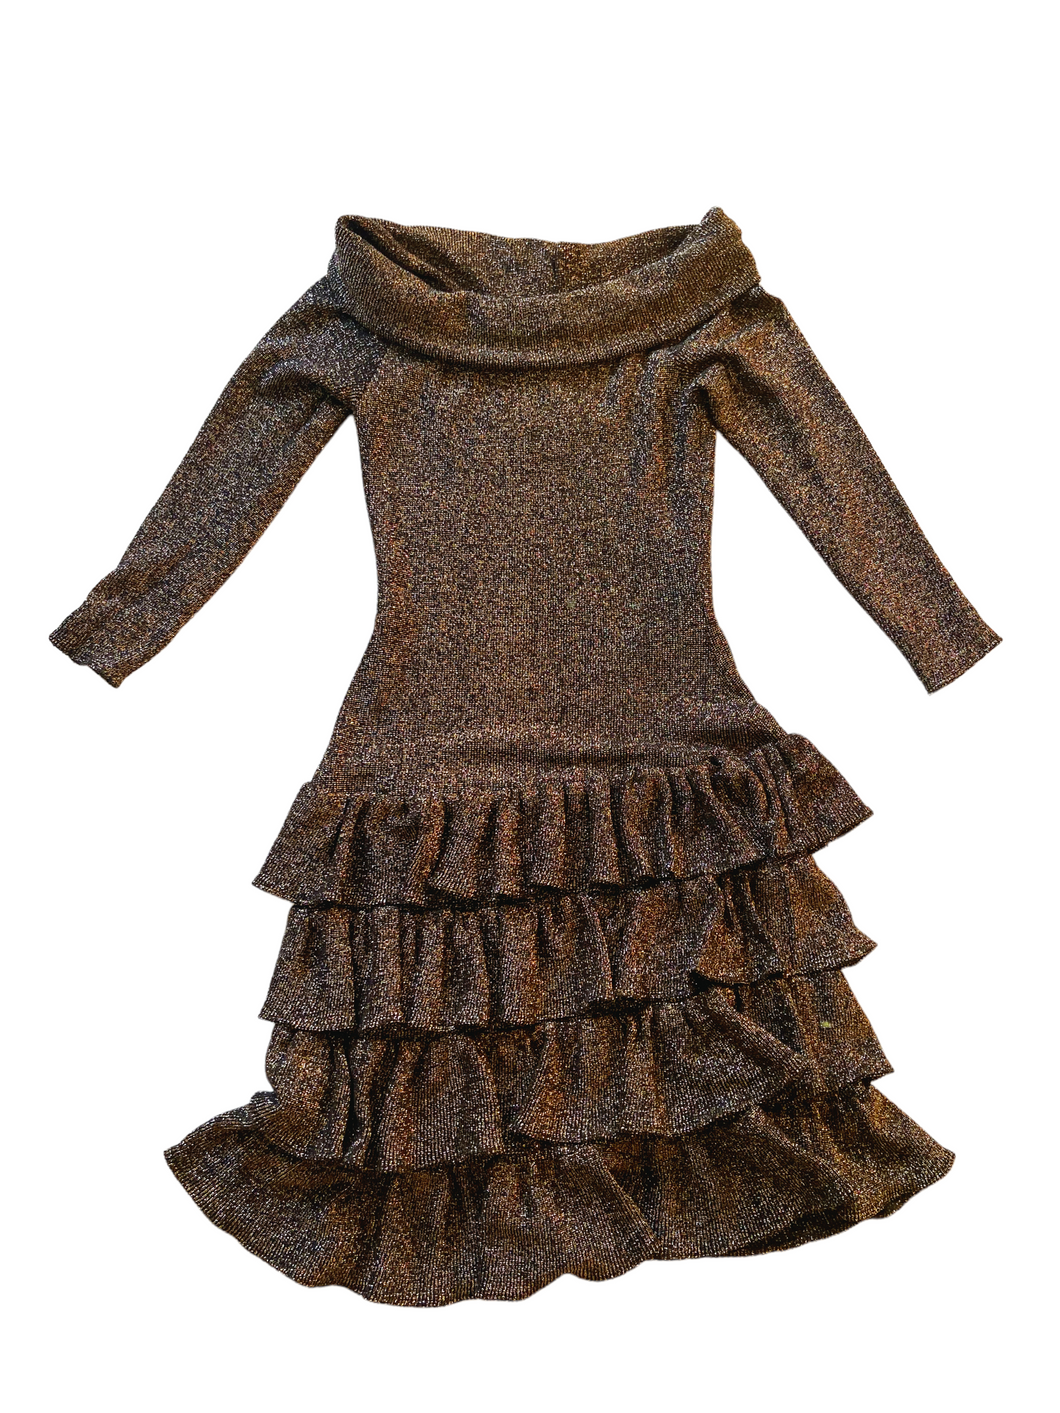 Metallic Knit Ruffle Dress S/M